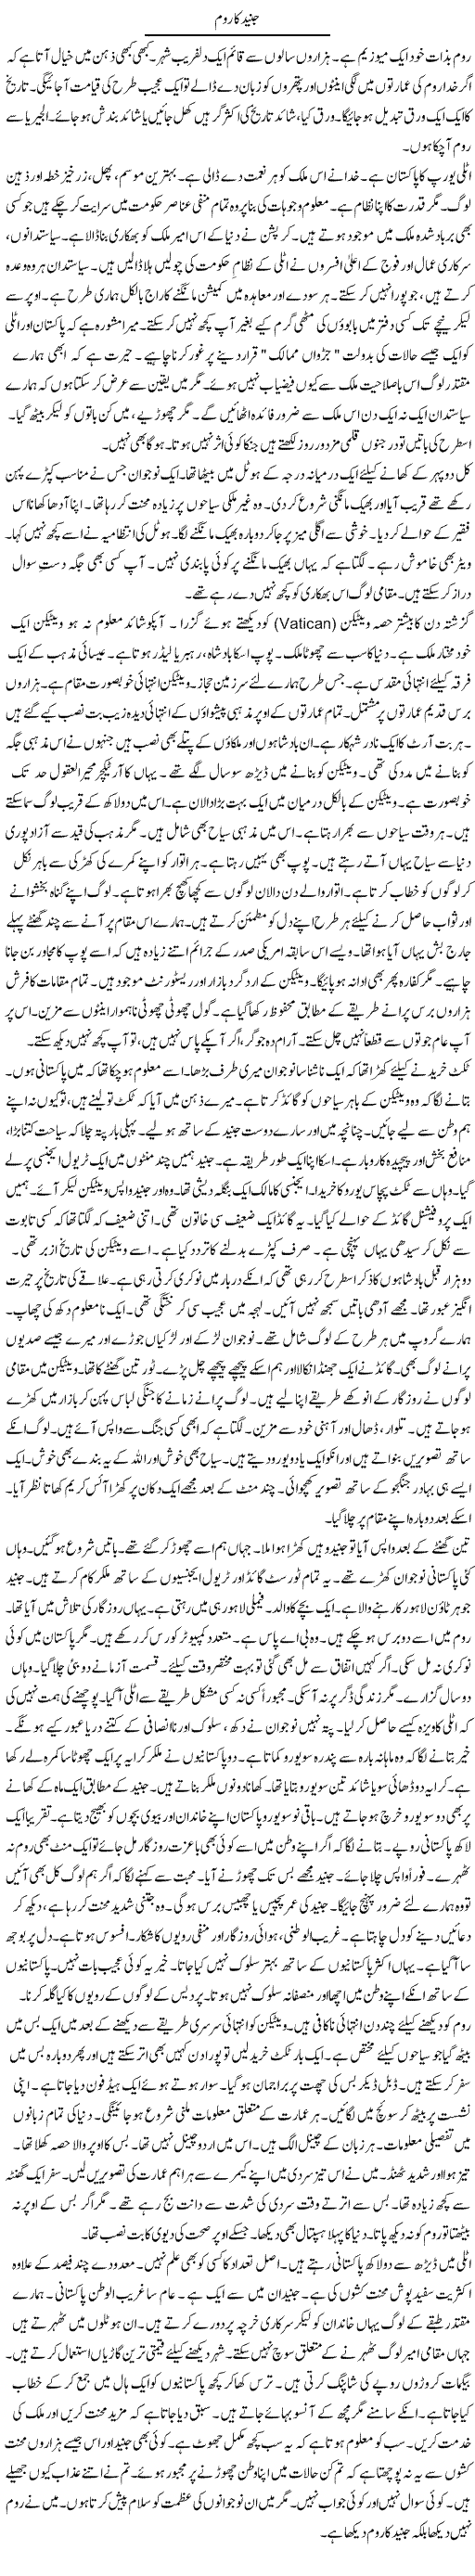 Junaid Ka Room | Rao Manzar Hayat | Daily Urdu Columns